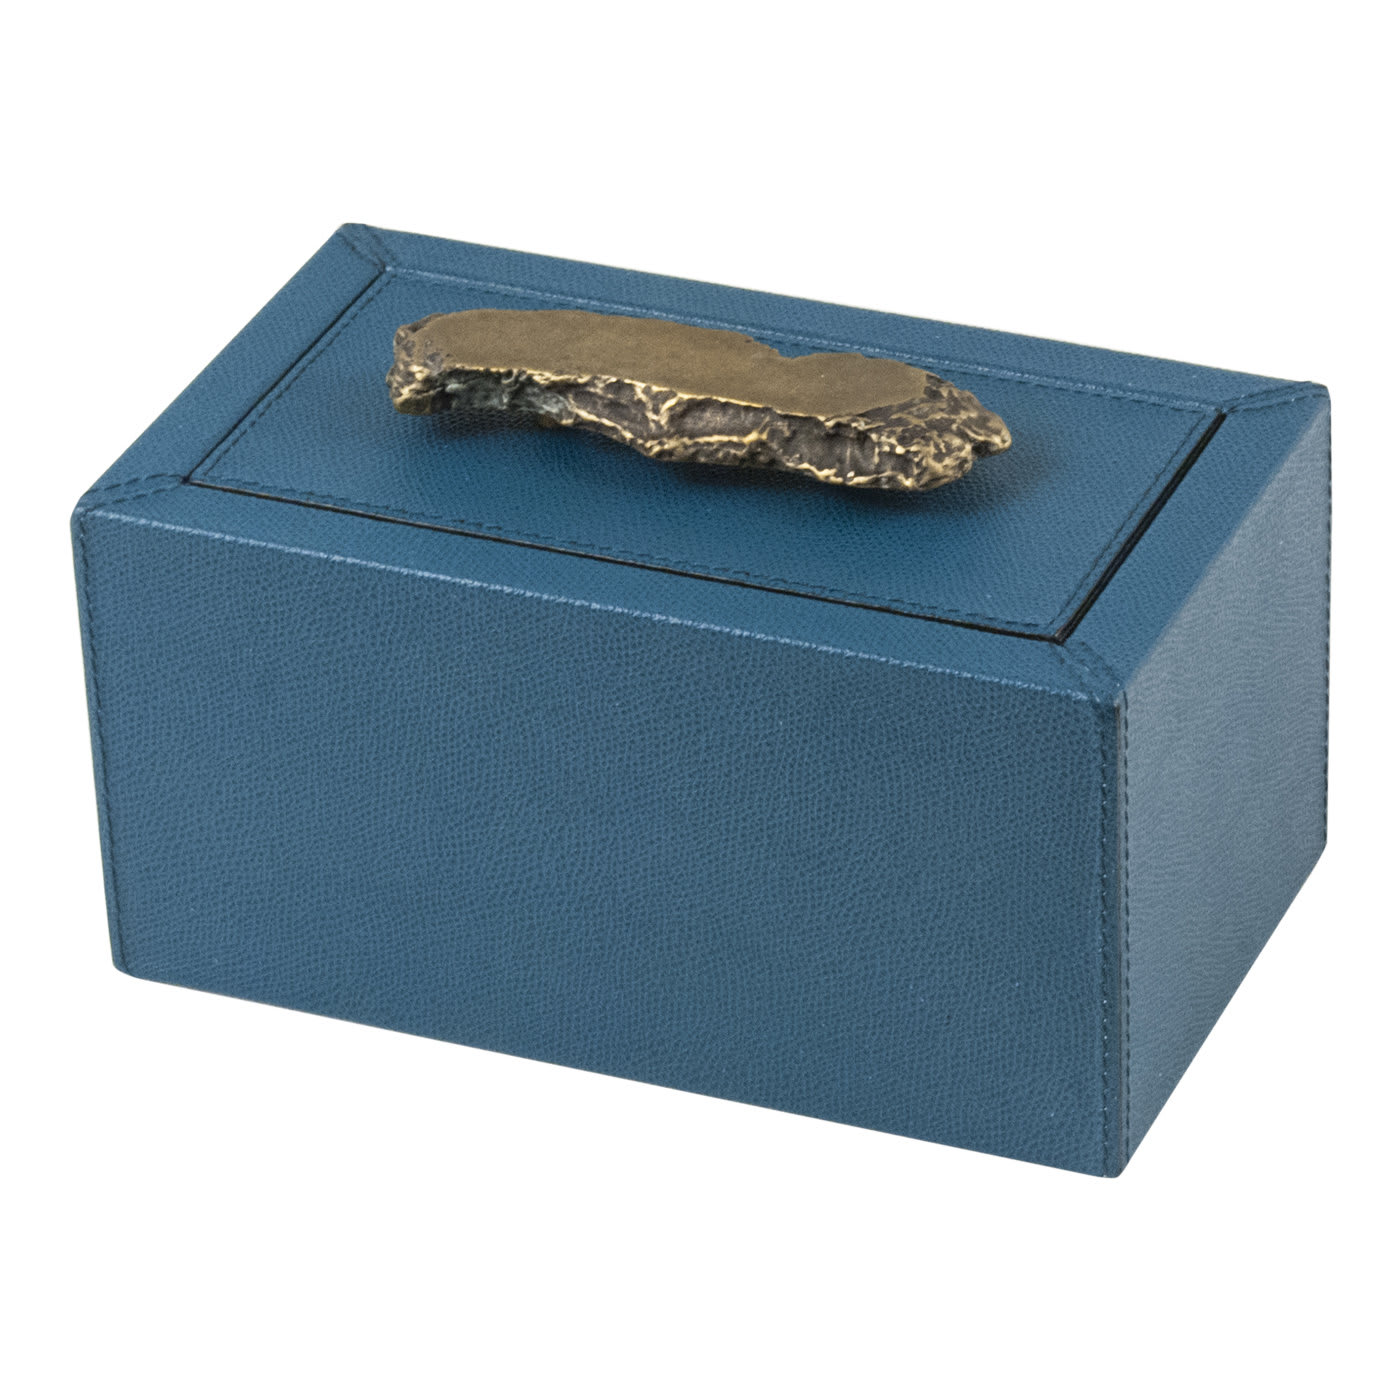 Ambra Small and Long Rectangular Trinket Box - Giobagnara